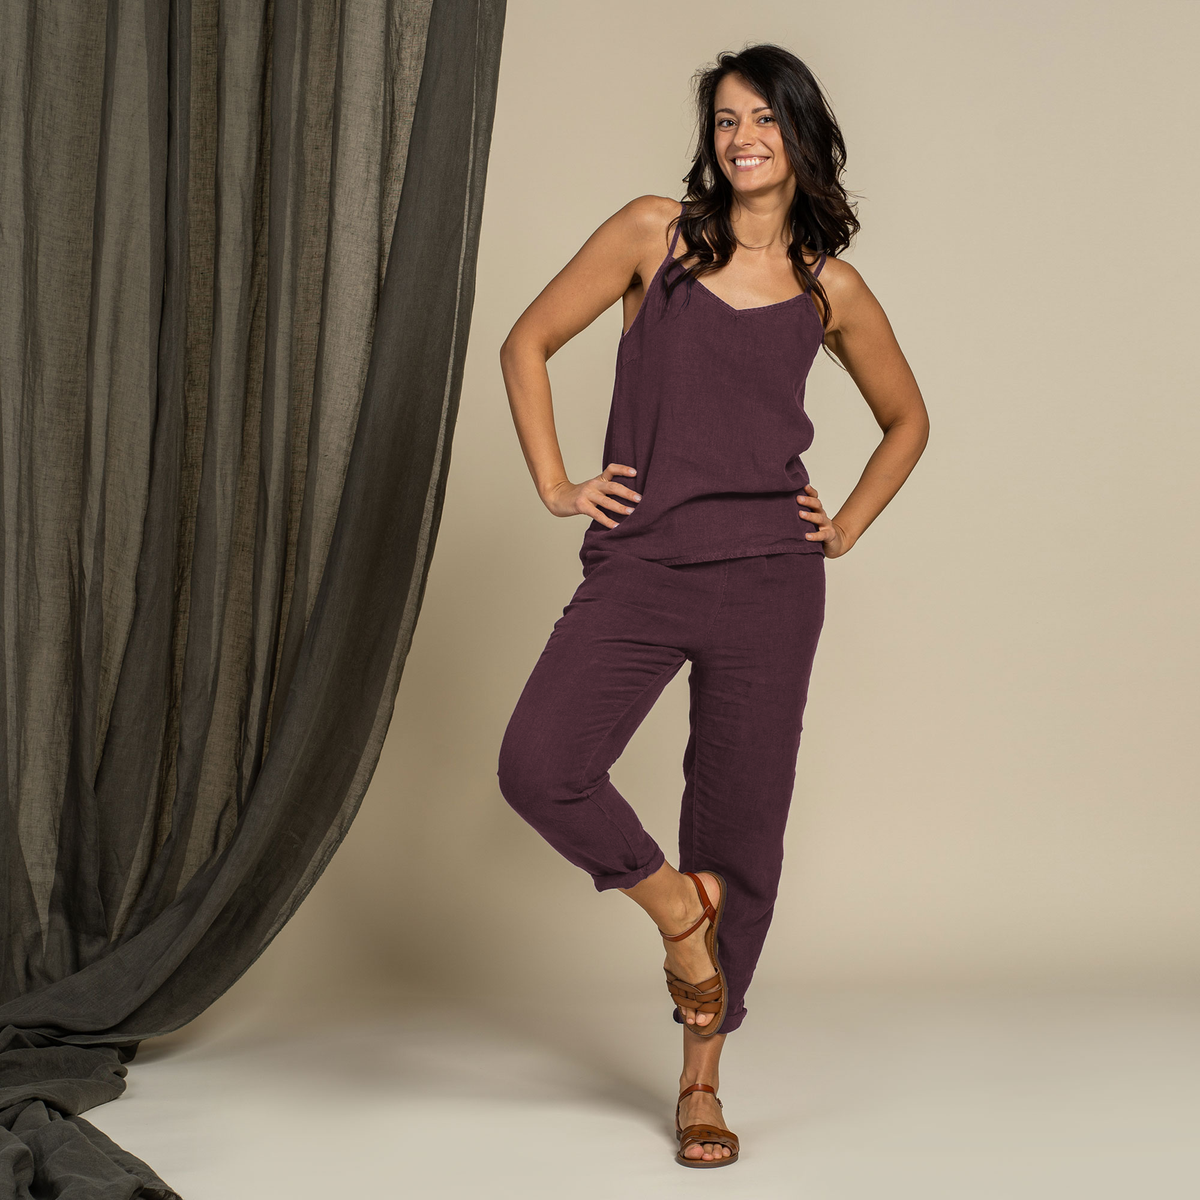 MENIQUE 100% Linen Womens Slip Top & Pants 2-Piece Shadow Purple